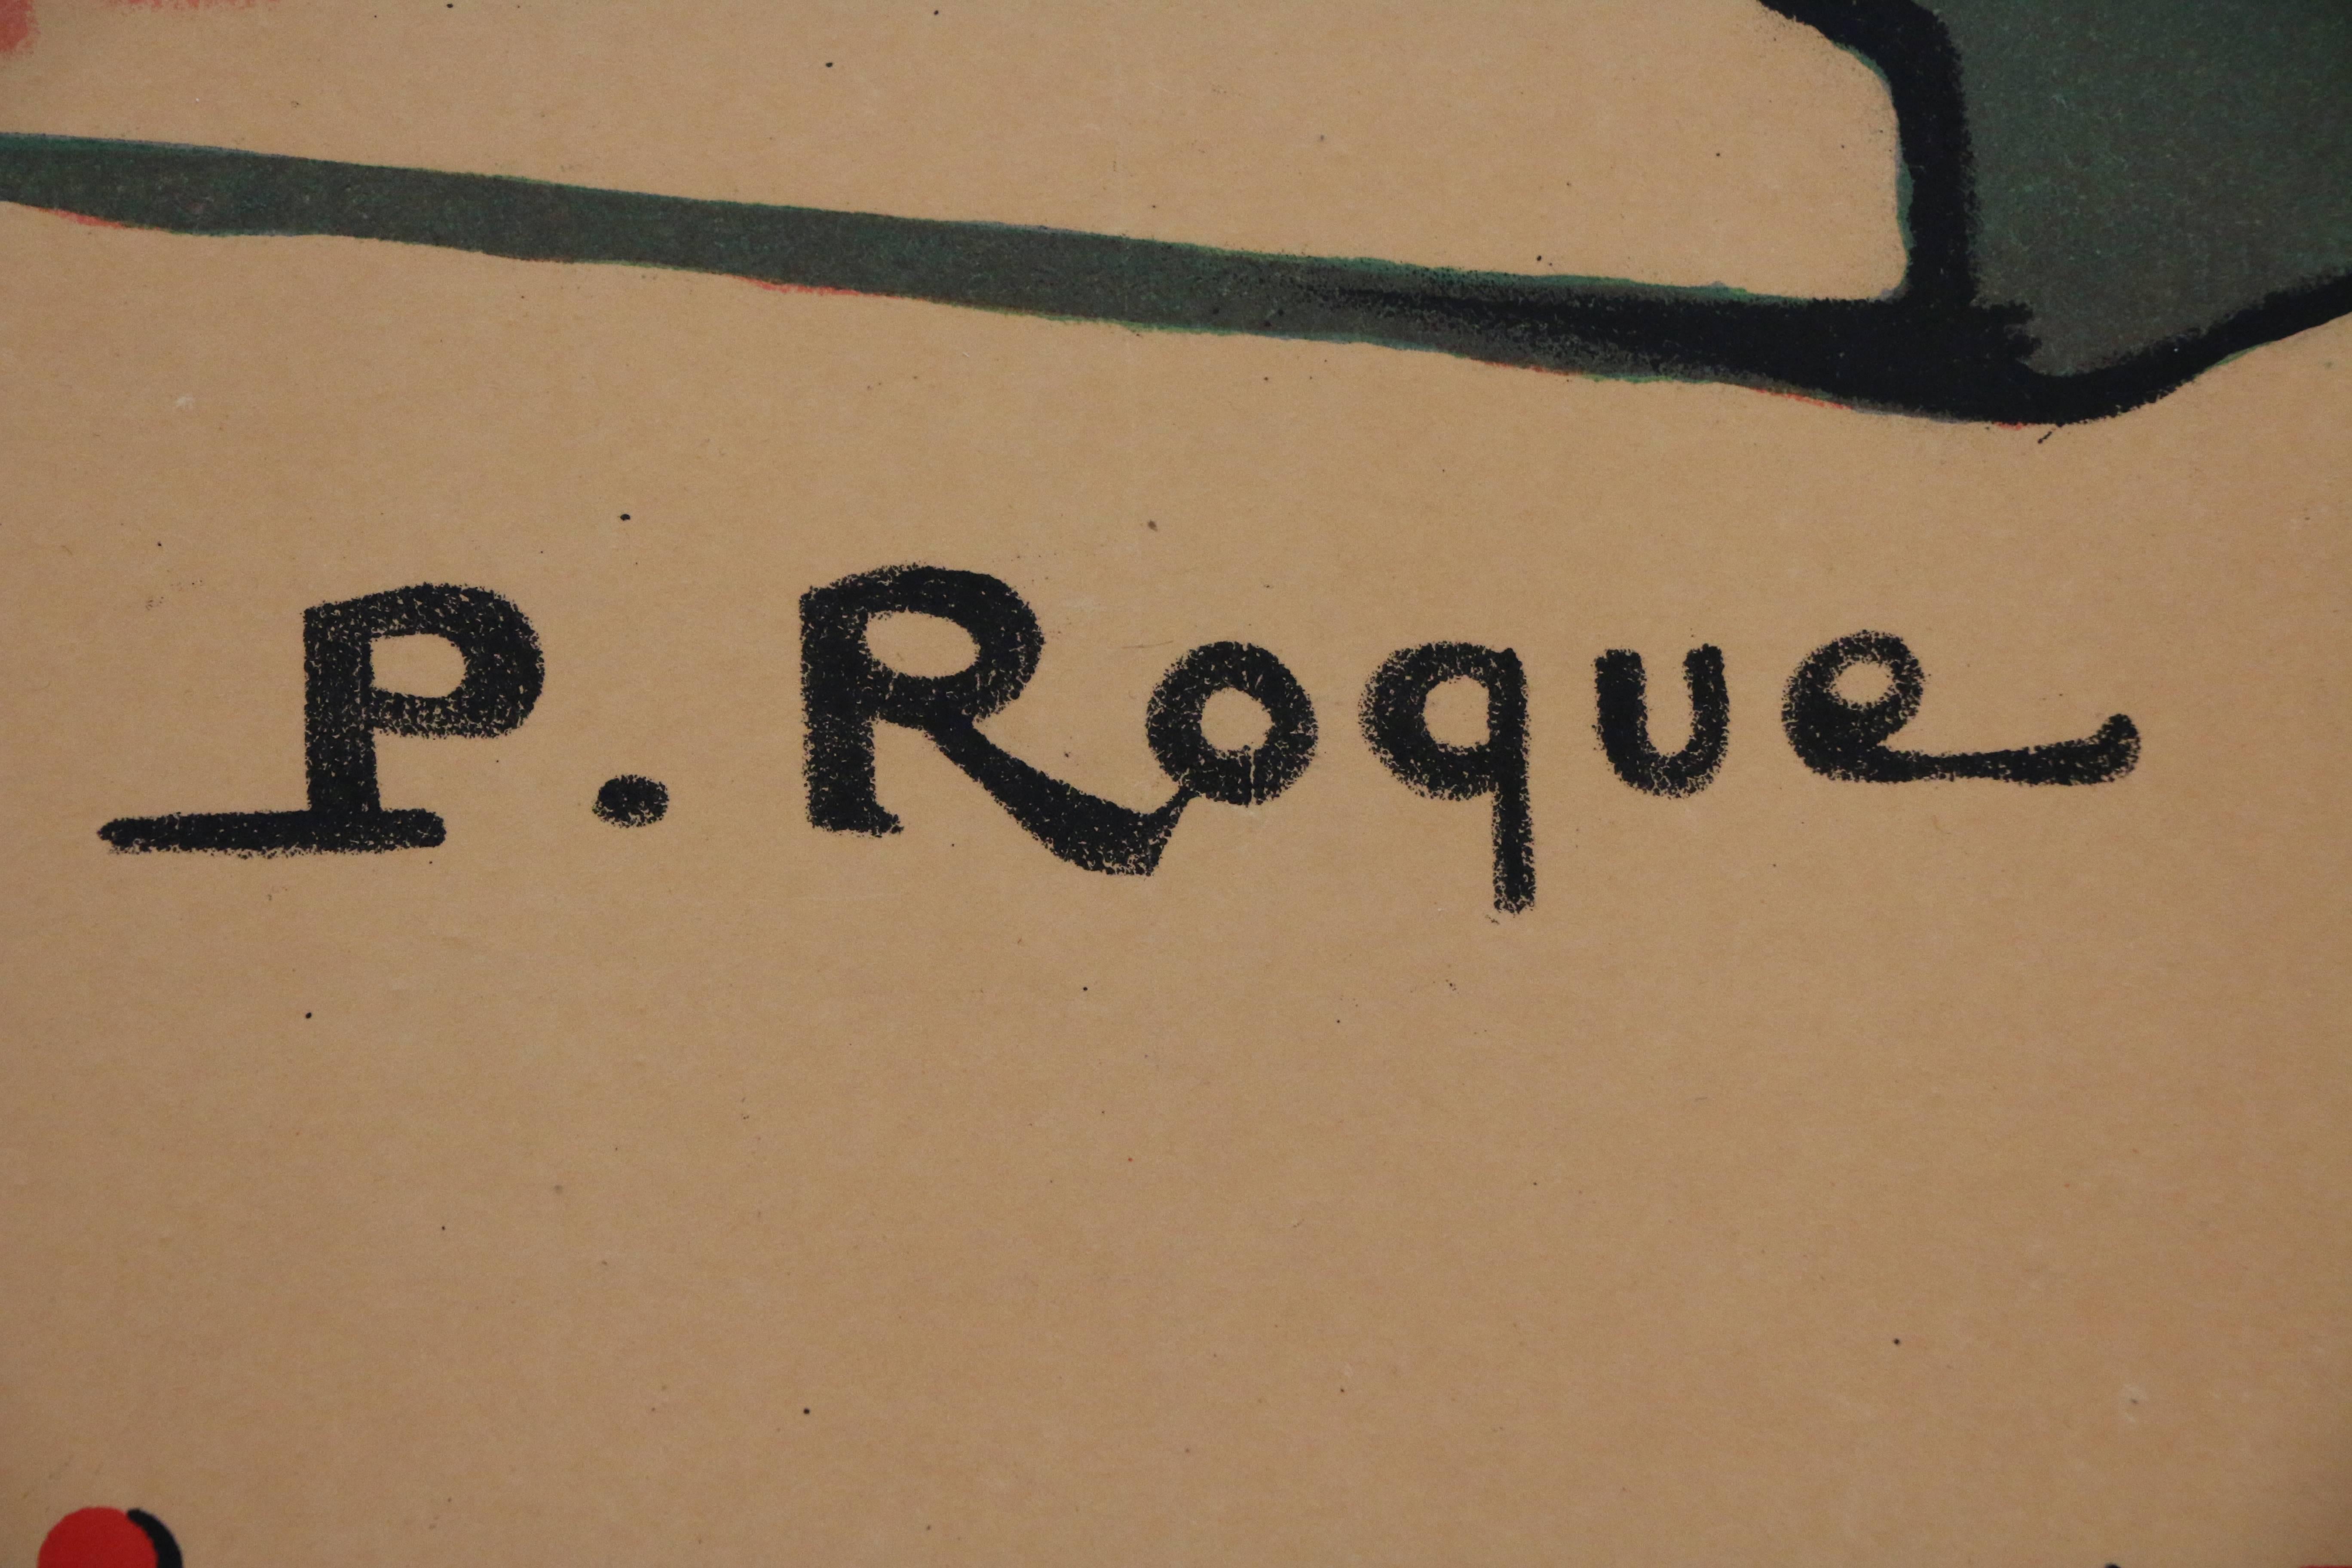 Cette affiche a été créée par P. Roque pour la célèbre Exposition Internationale des Arts Décoratifs de 1925 à Paris. Cette exposition est surtout connue pour avoir lancé le style Art déco dans le monde entier. Il s'agit d'une affiche lithographique